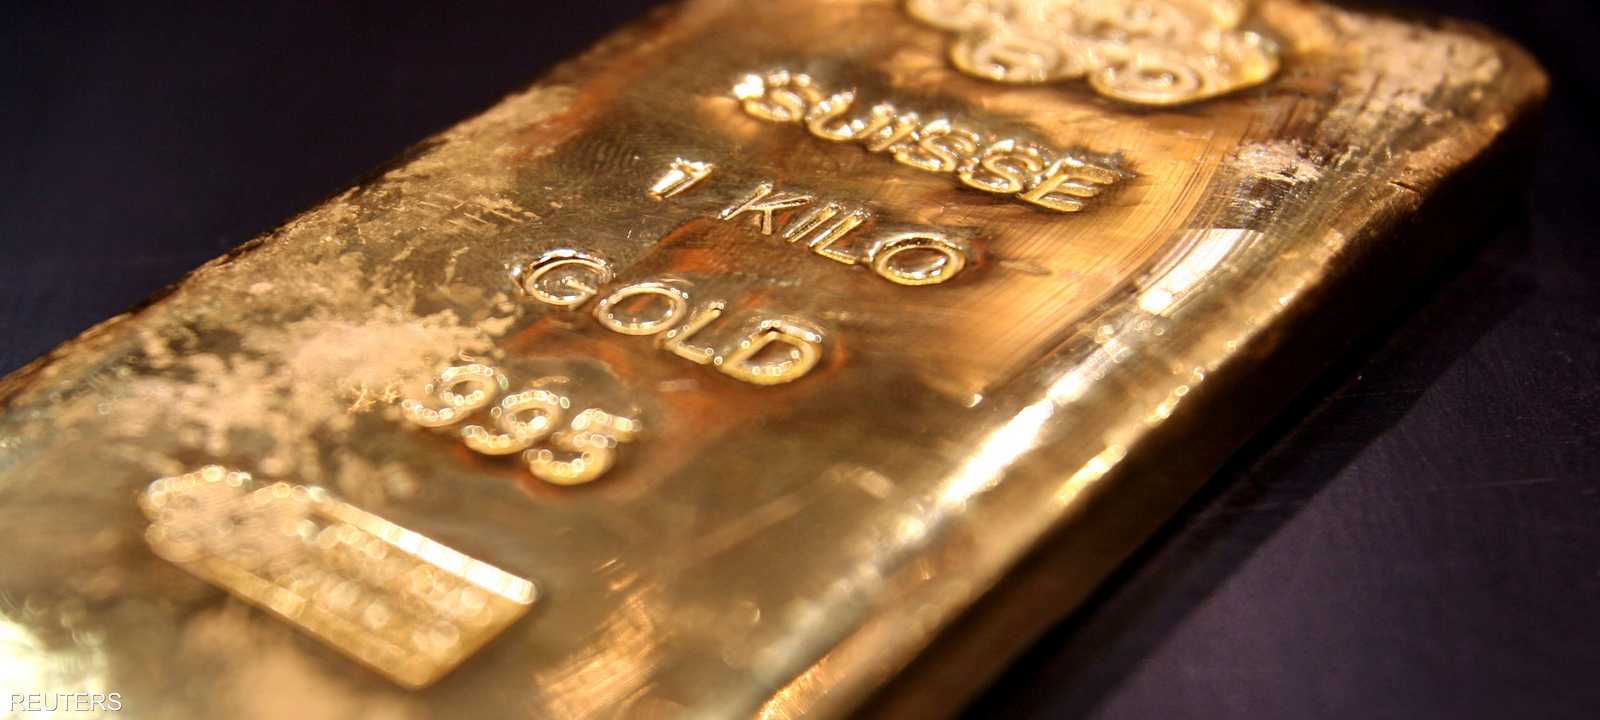 يقول محللون إن قوة الدولار تضعف جاذبية الذهب.